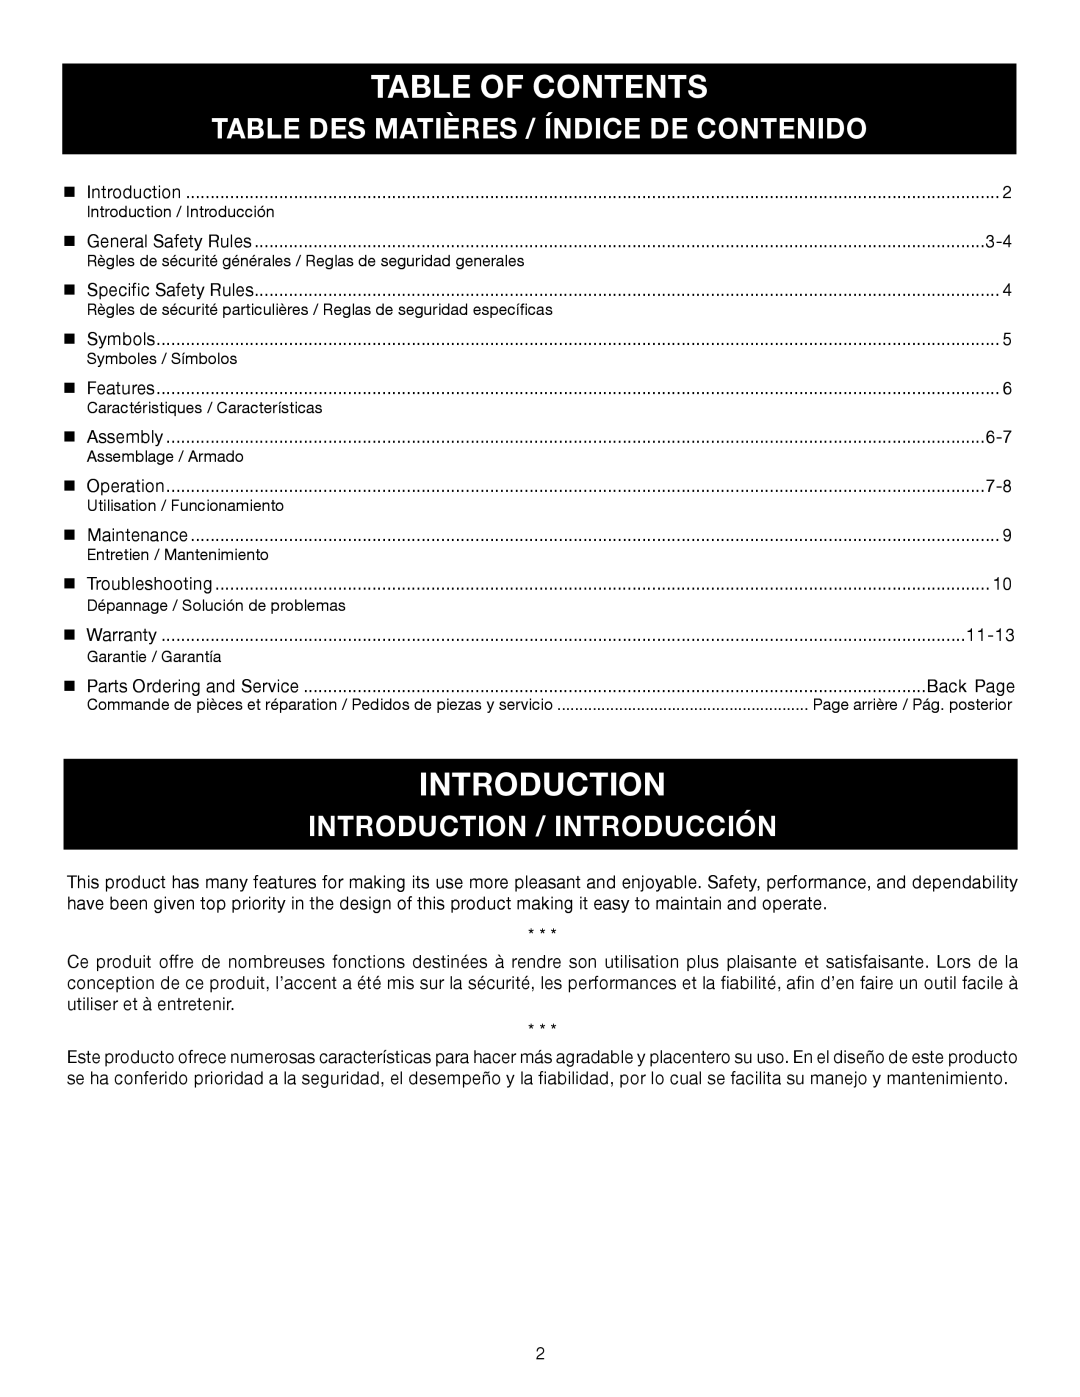 Ryobi RY28000 Table Of Contents, Table Des Matières / Índice De Contenido, Introduction / Introducción 